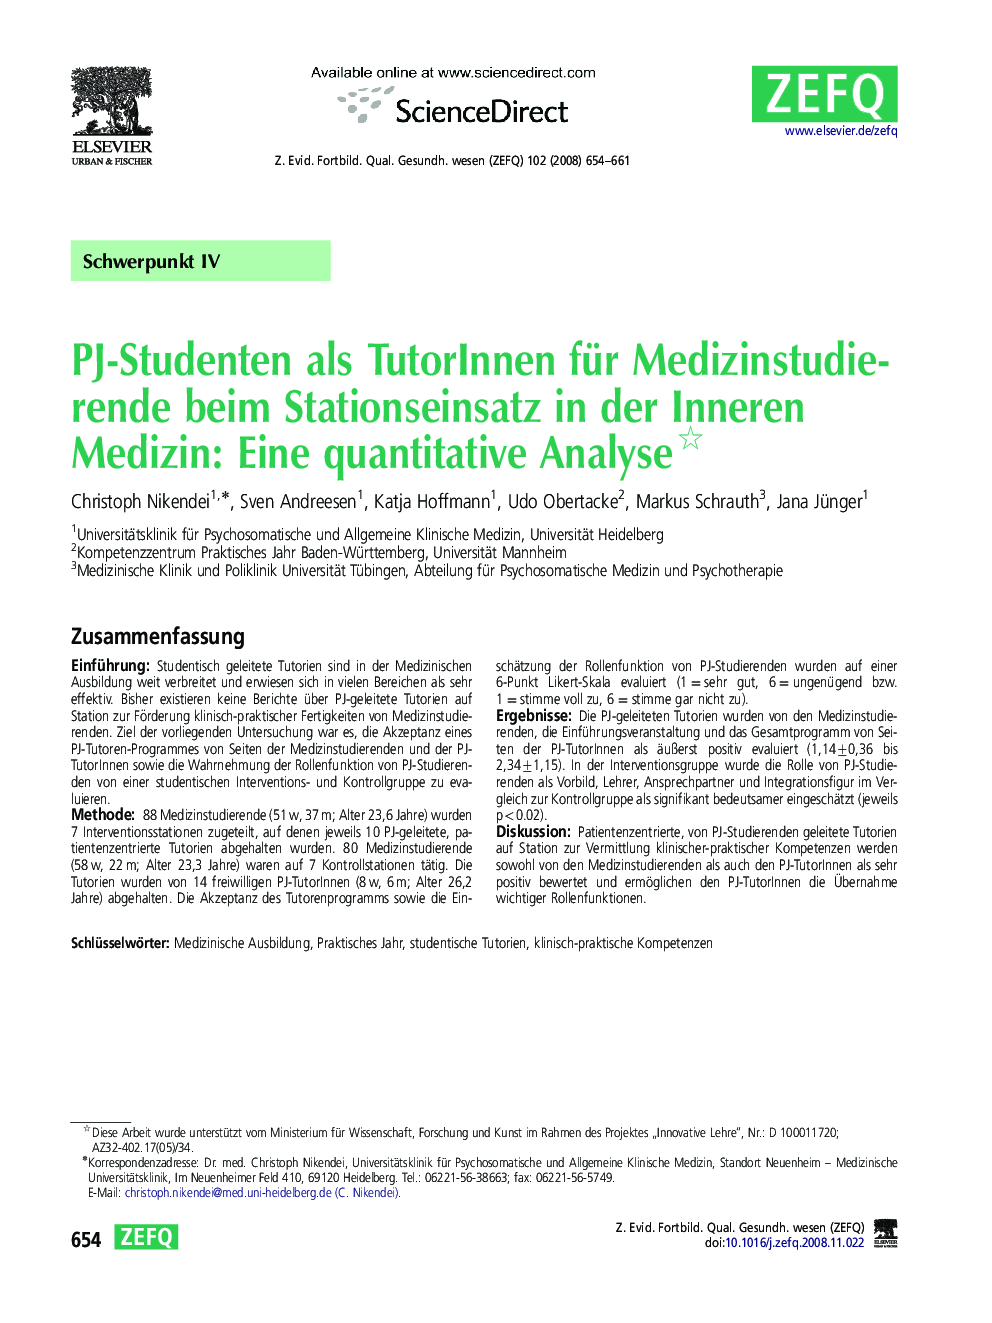 PJ-Studenten als TutorInnen für Medizinstudierende beim Stationseinsatz in der Inneren Medizin: Eine quantitative Analyse 